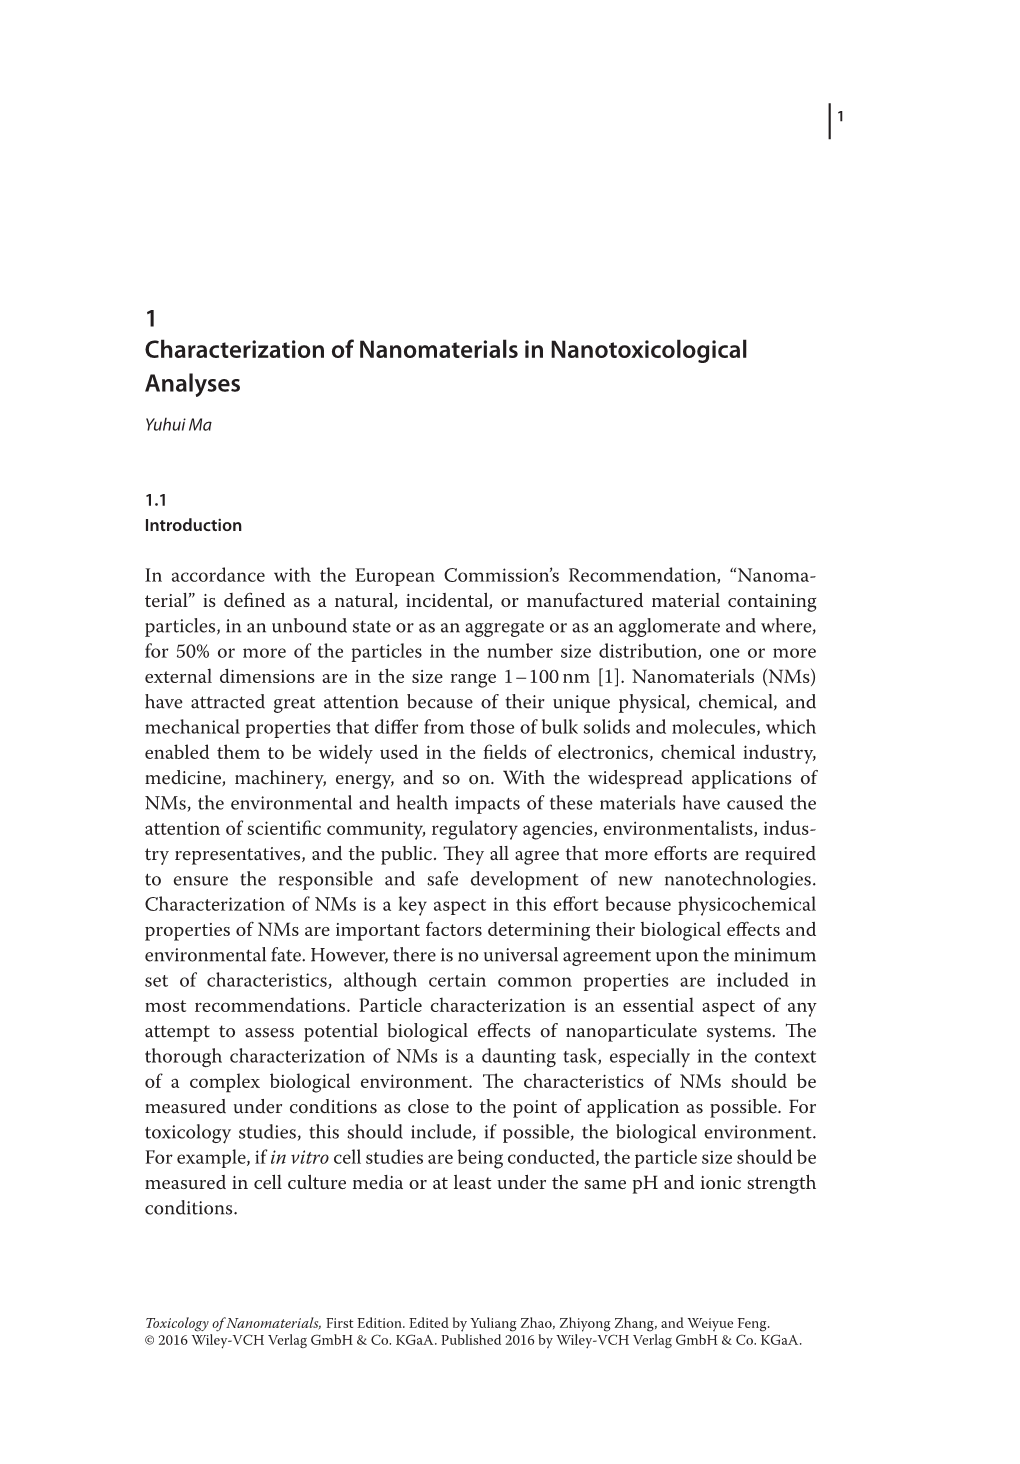 1 Characterization of Nanomaterials in Nanotoxicological Analyses